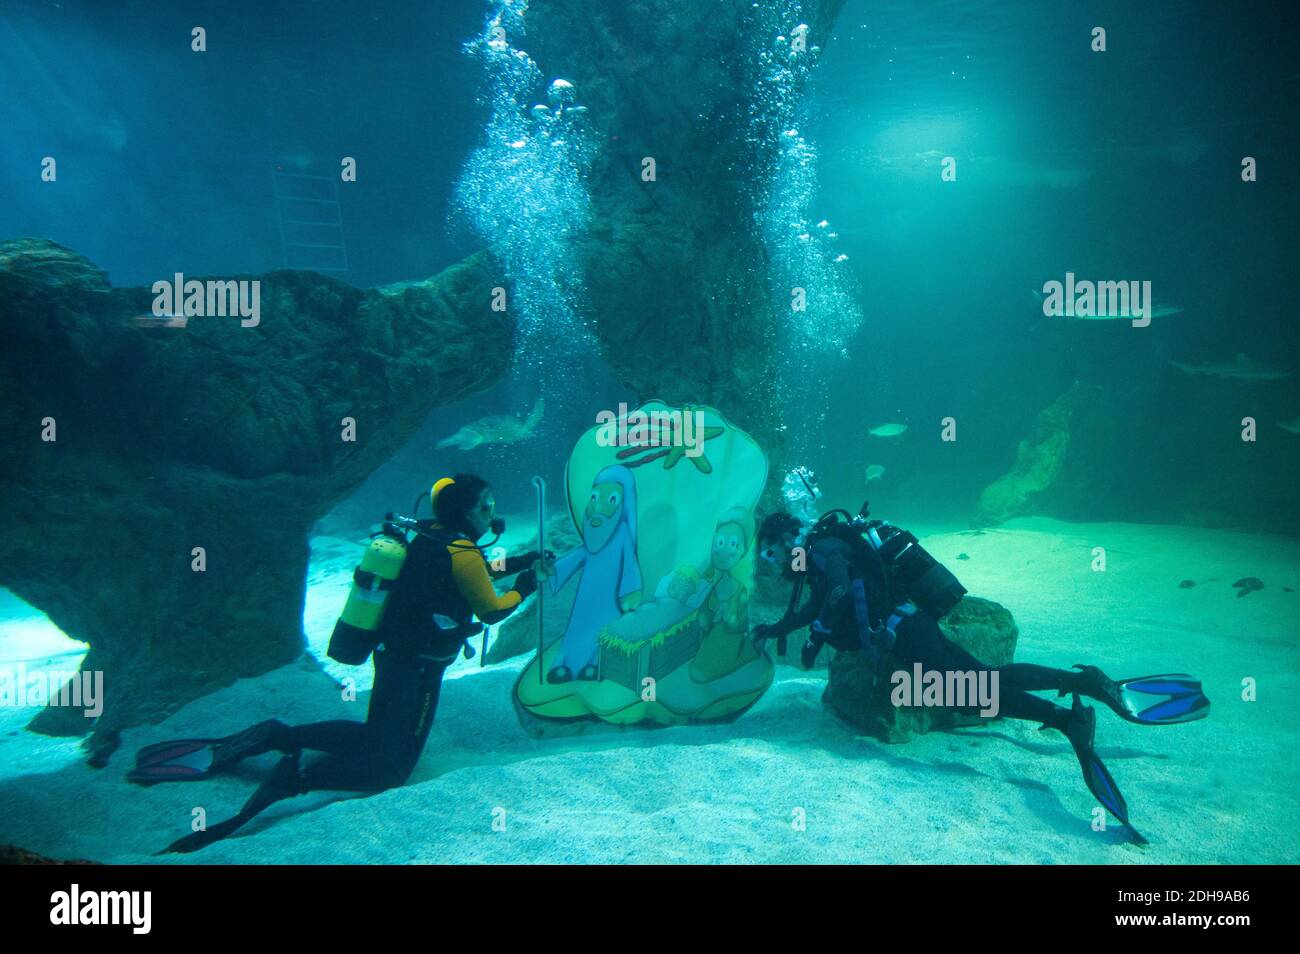 Madrid, Spagna. 10 dicembre 2020. Due subacquei collocano parte della tradizionale Presepe di Natale sott'acqua all'interno dell'acquario dello Zoo di Madrid. Credit: Marcos del Mazo/Alamy Live News Foto Stock